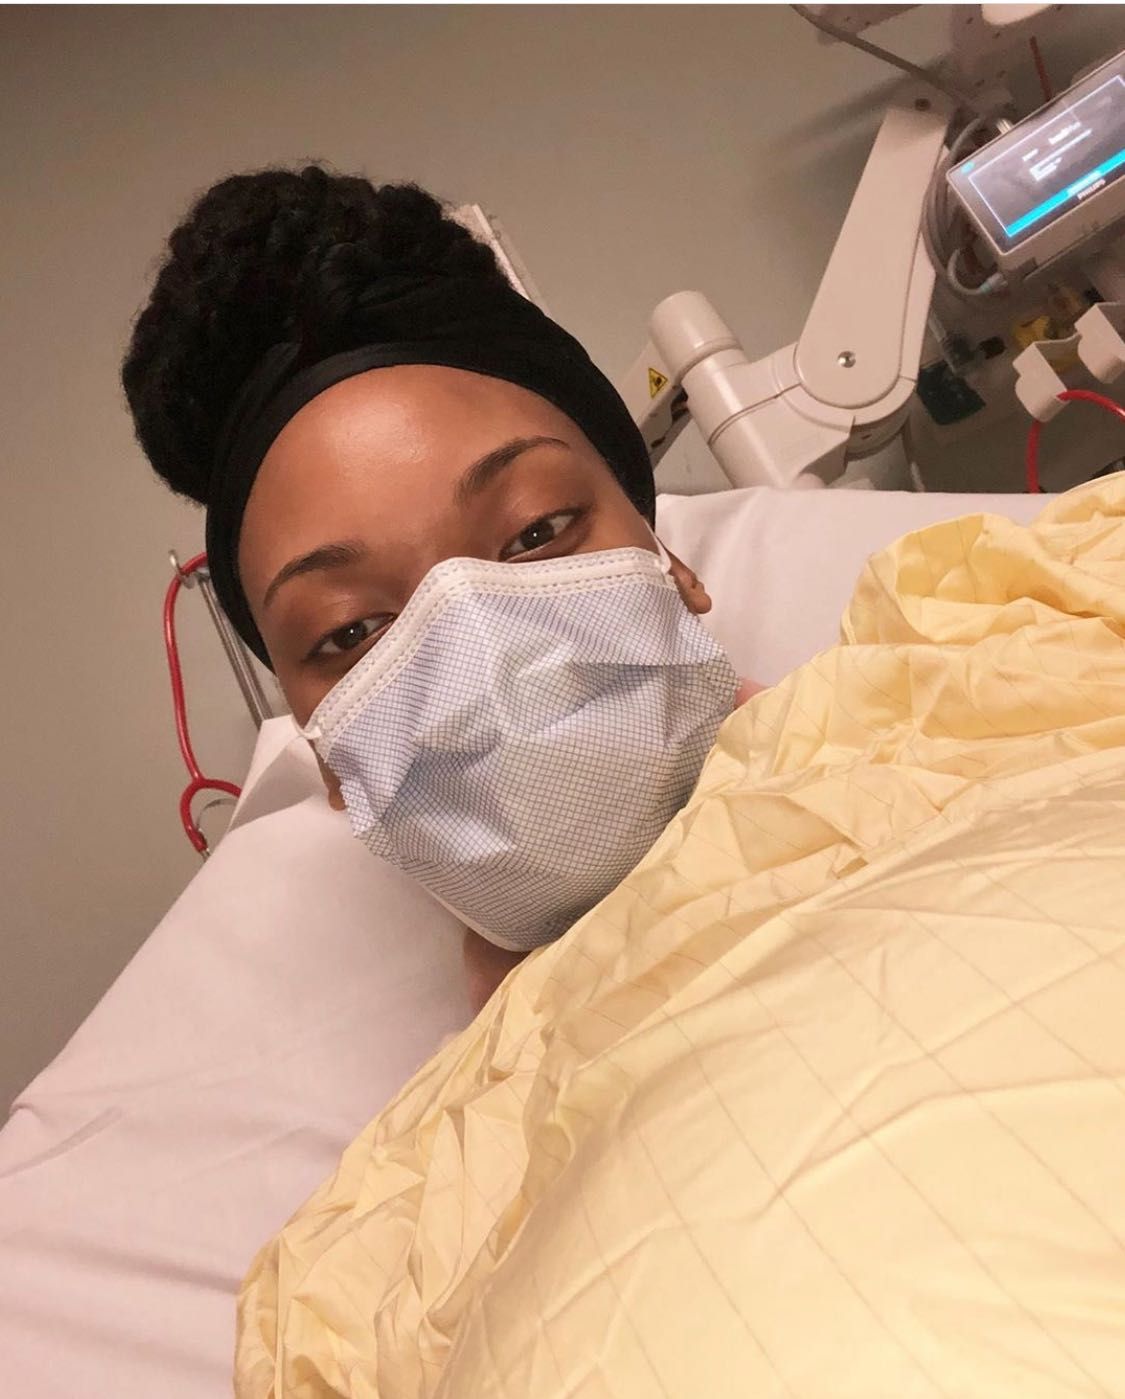 Instagram Black Woman In Hospital Bed Matteomezzetta